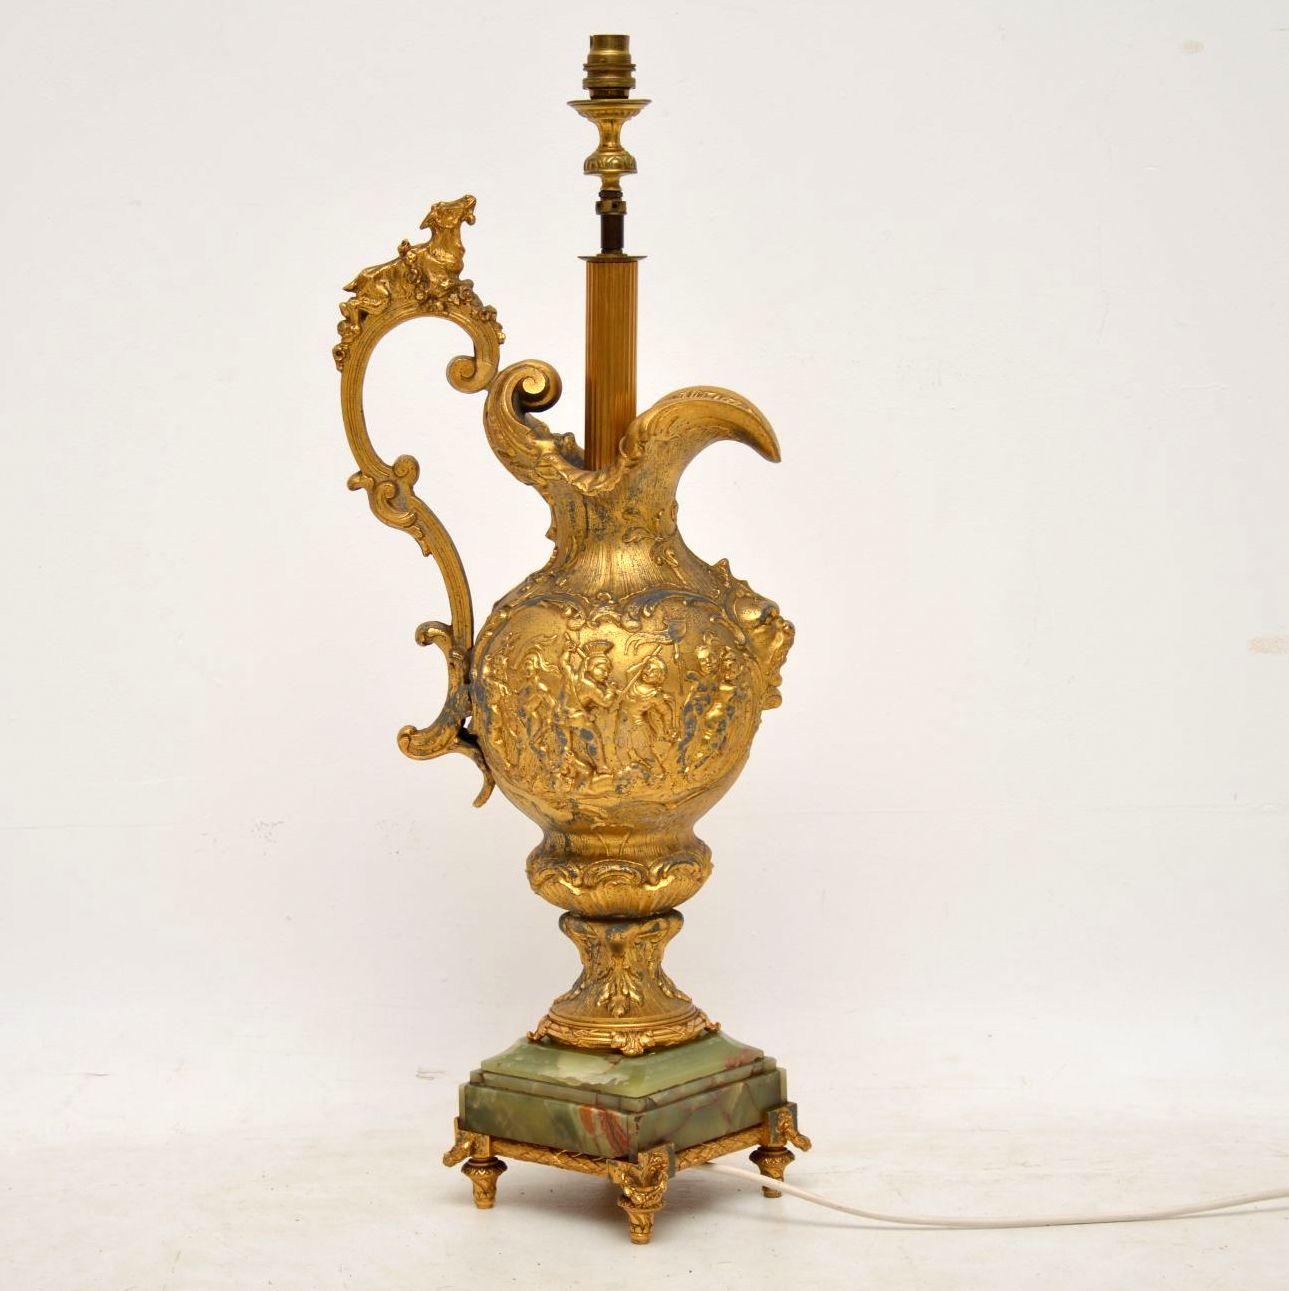 Grande lampe ancienne en métal doré en forme de flagon gaufré avec de nombreux détails raffinés et reposant sur une base en onyx avec des pieds dorés.

La dorure a une couleur dorée douce et a été nettoyée un peu mais pourrait être nettoyée